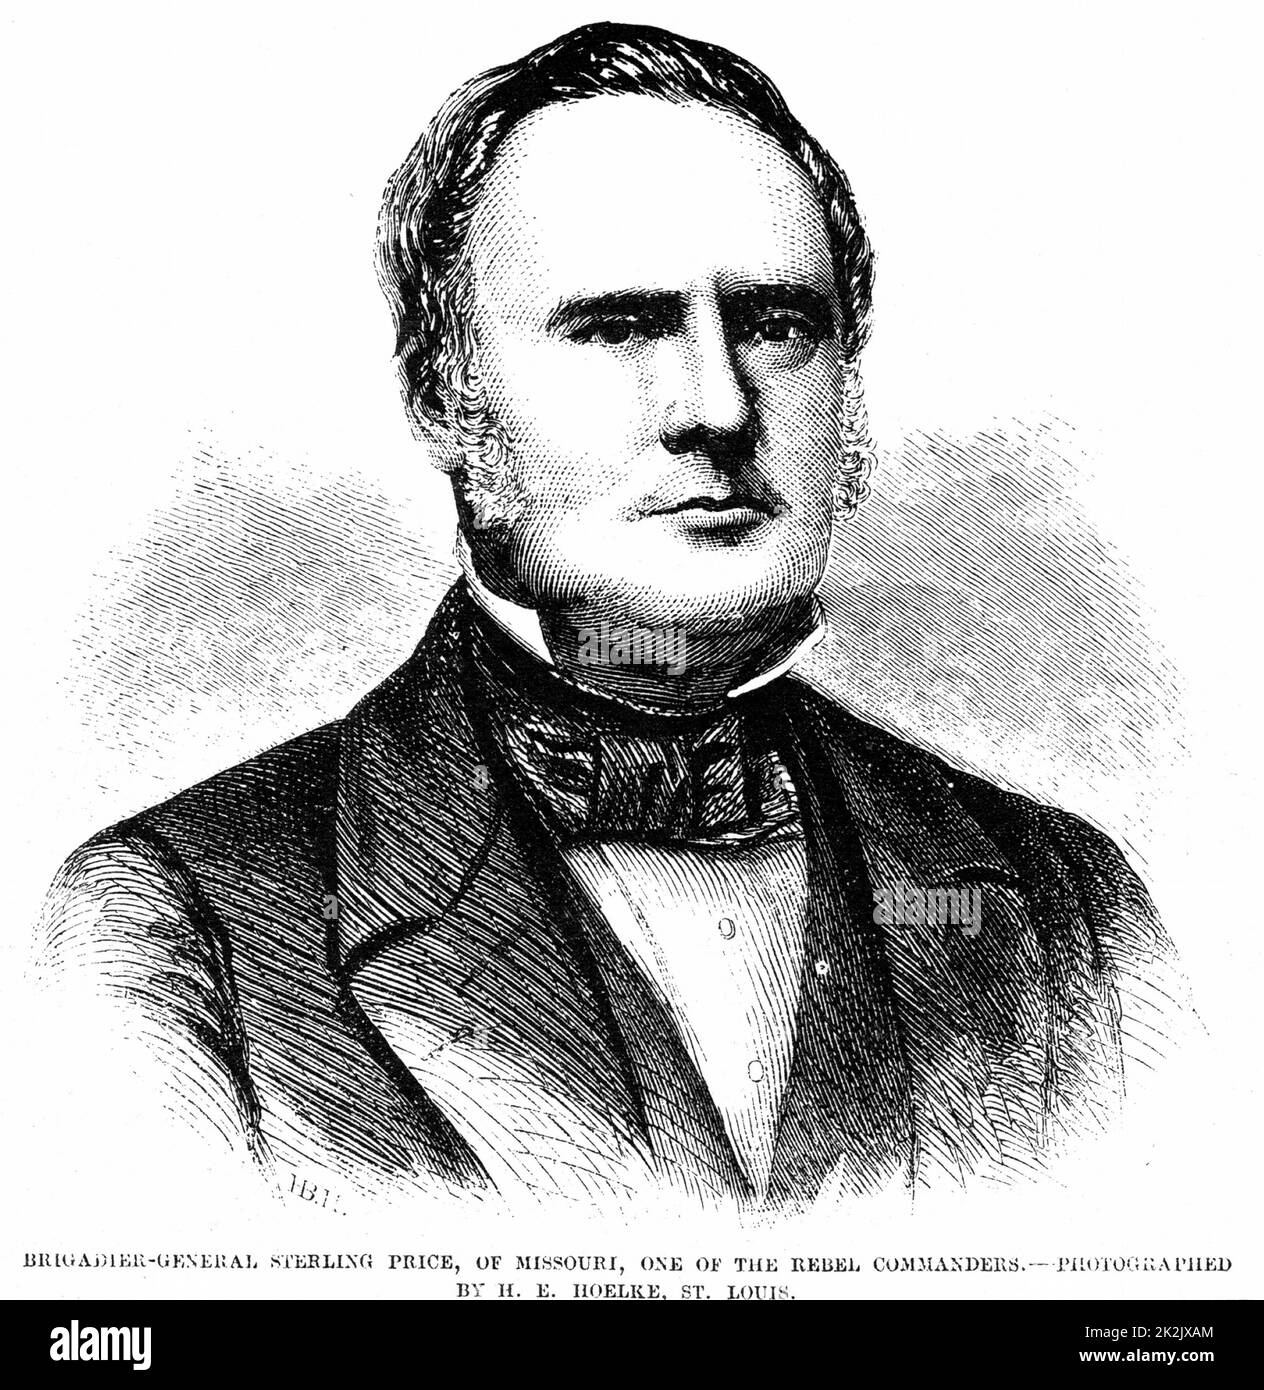 Sterling Price, General in Army of the Southern Confederate) Staaten während des amerikanischen Bürgerkrieges 1861-1865. Porträtstich von 1861 Stockfoto